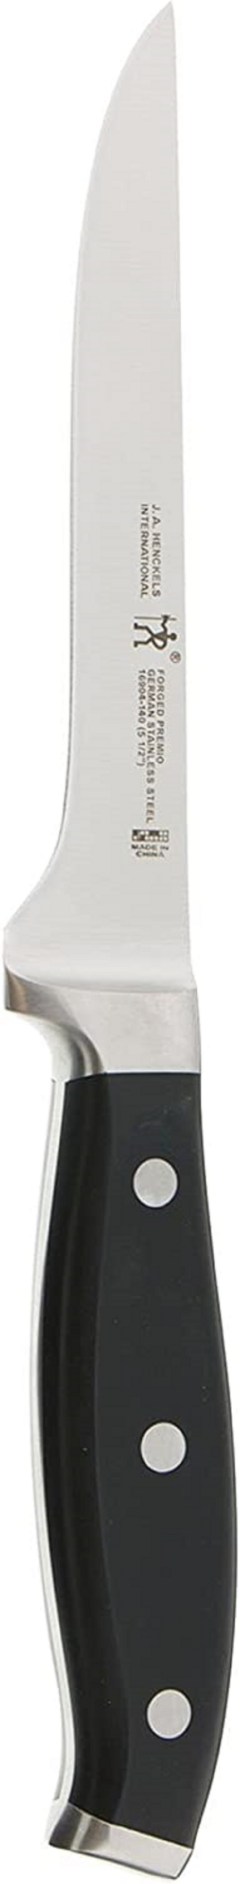 Henckels 5.5" Stainless Steel Boning Knife